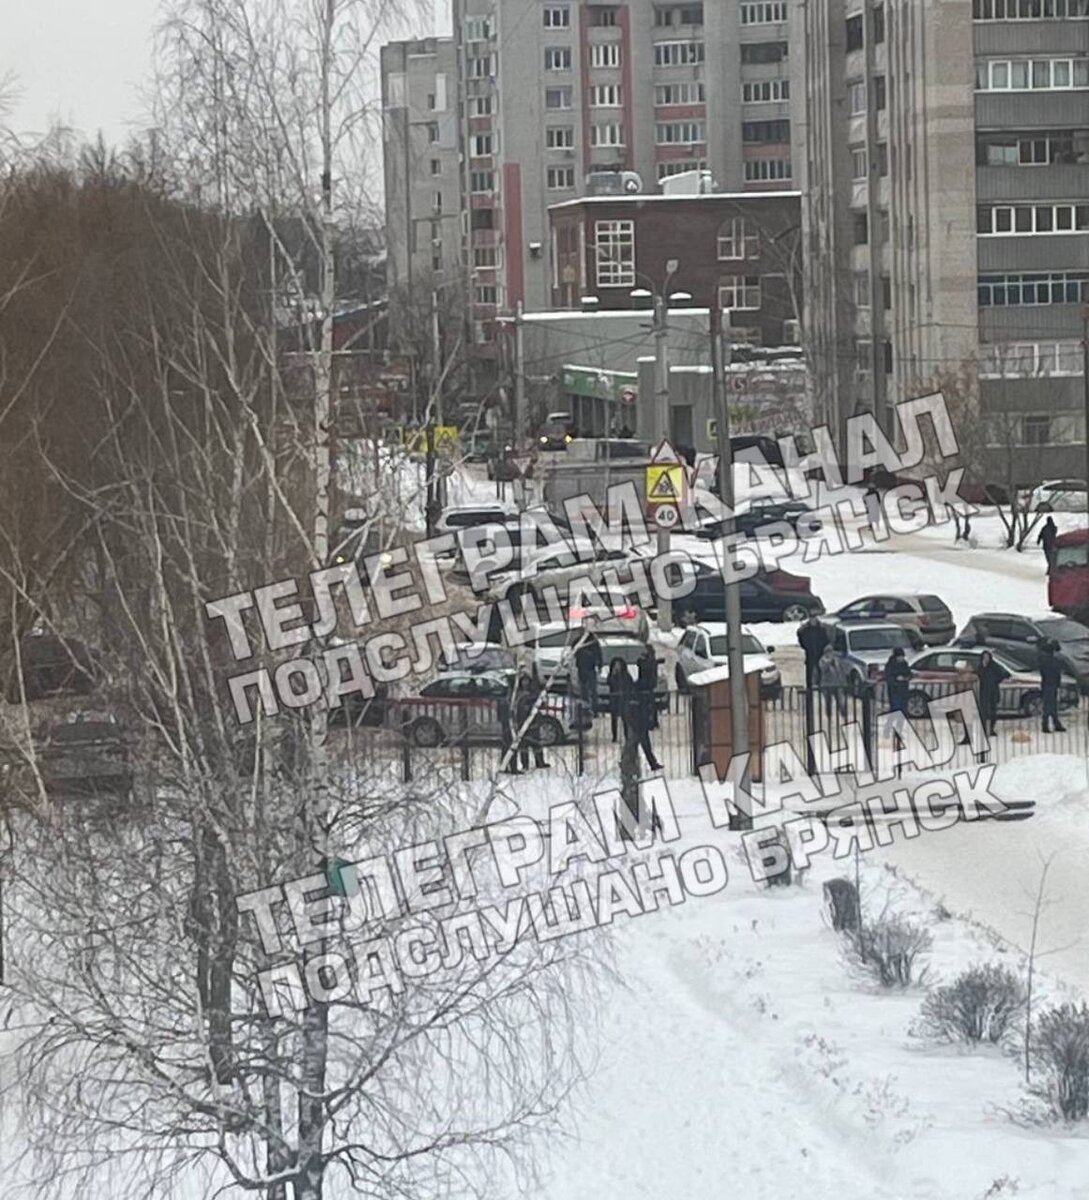 Два человека погибли и четверо пострадали во время стрельбы в гимназии в Брянске. Об этом 7 декабря сообщили в администрации города.